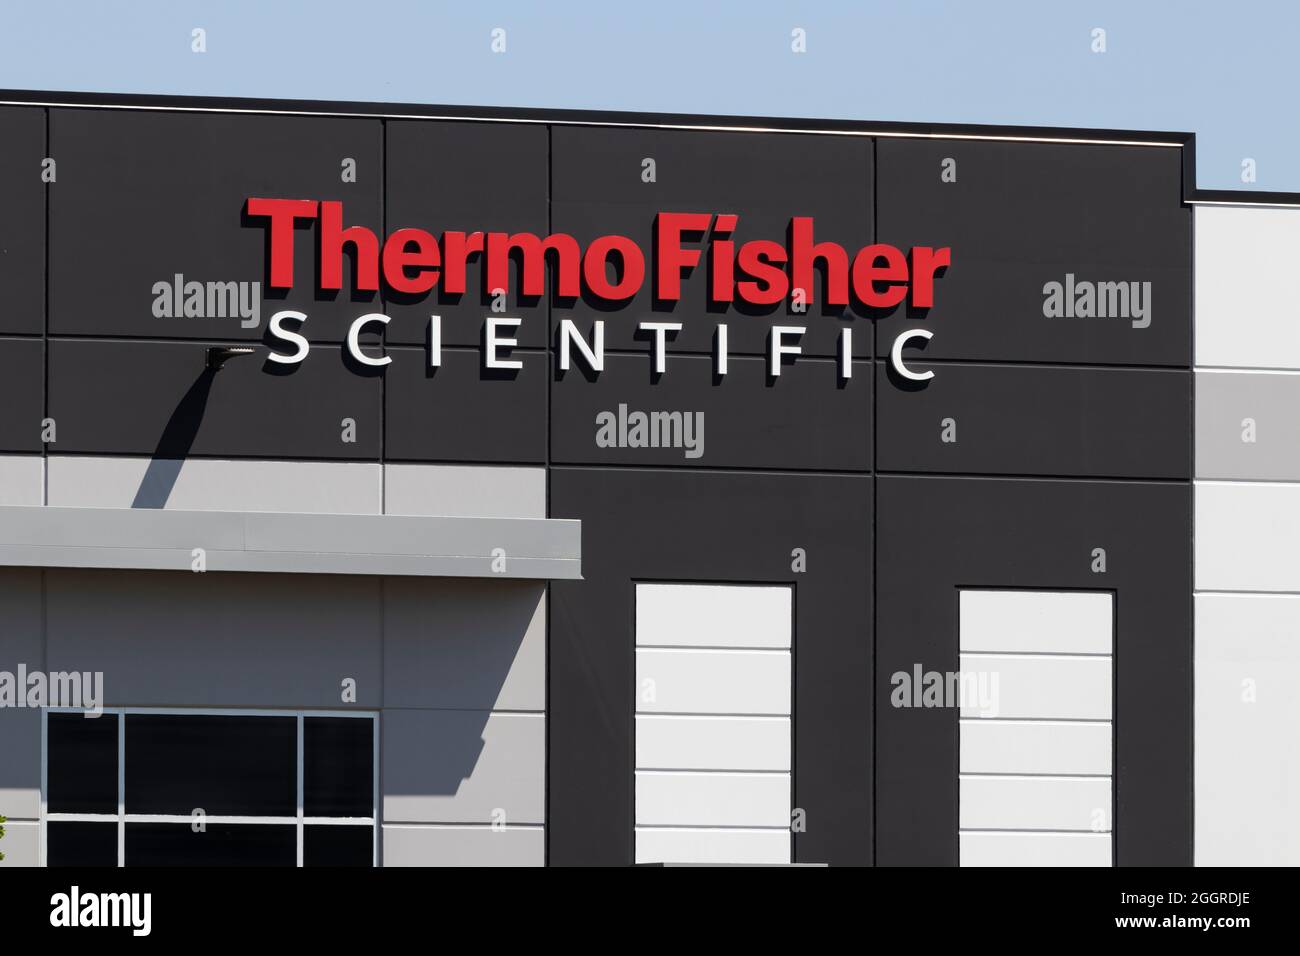 Thermo fisher scientific -Fotos und -Bildmaterial in hoher Auflösung – Alamy